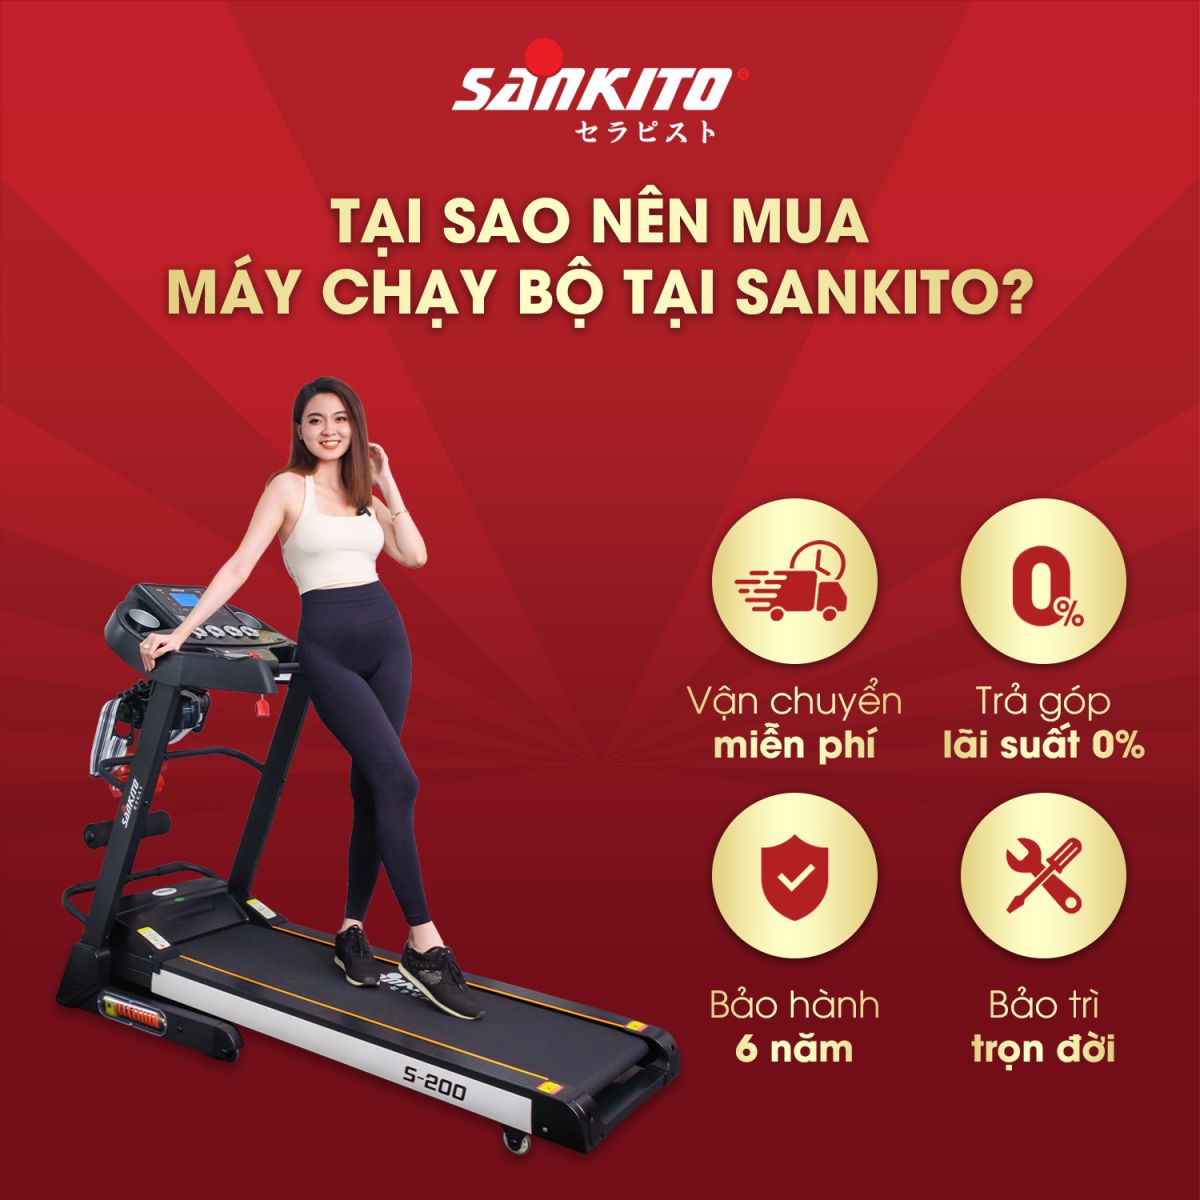 quyền lợi khi mua máy chạy bộ Sankito